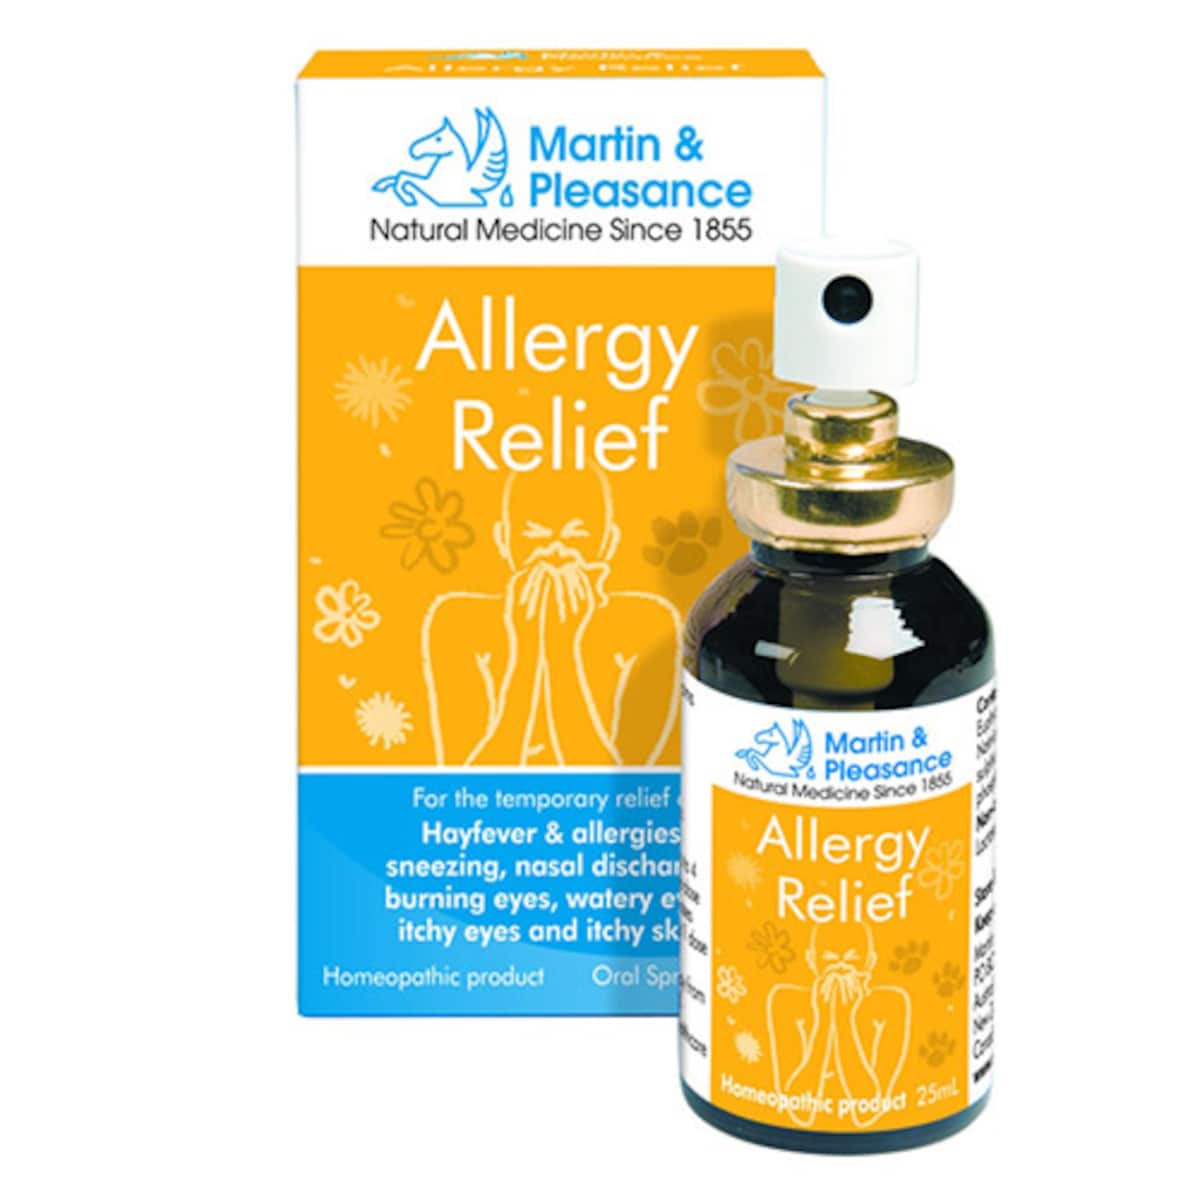 Martin & Pleasance Allergy Relief Spray 25ml